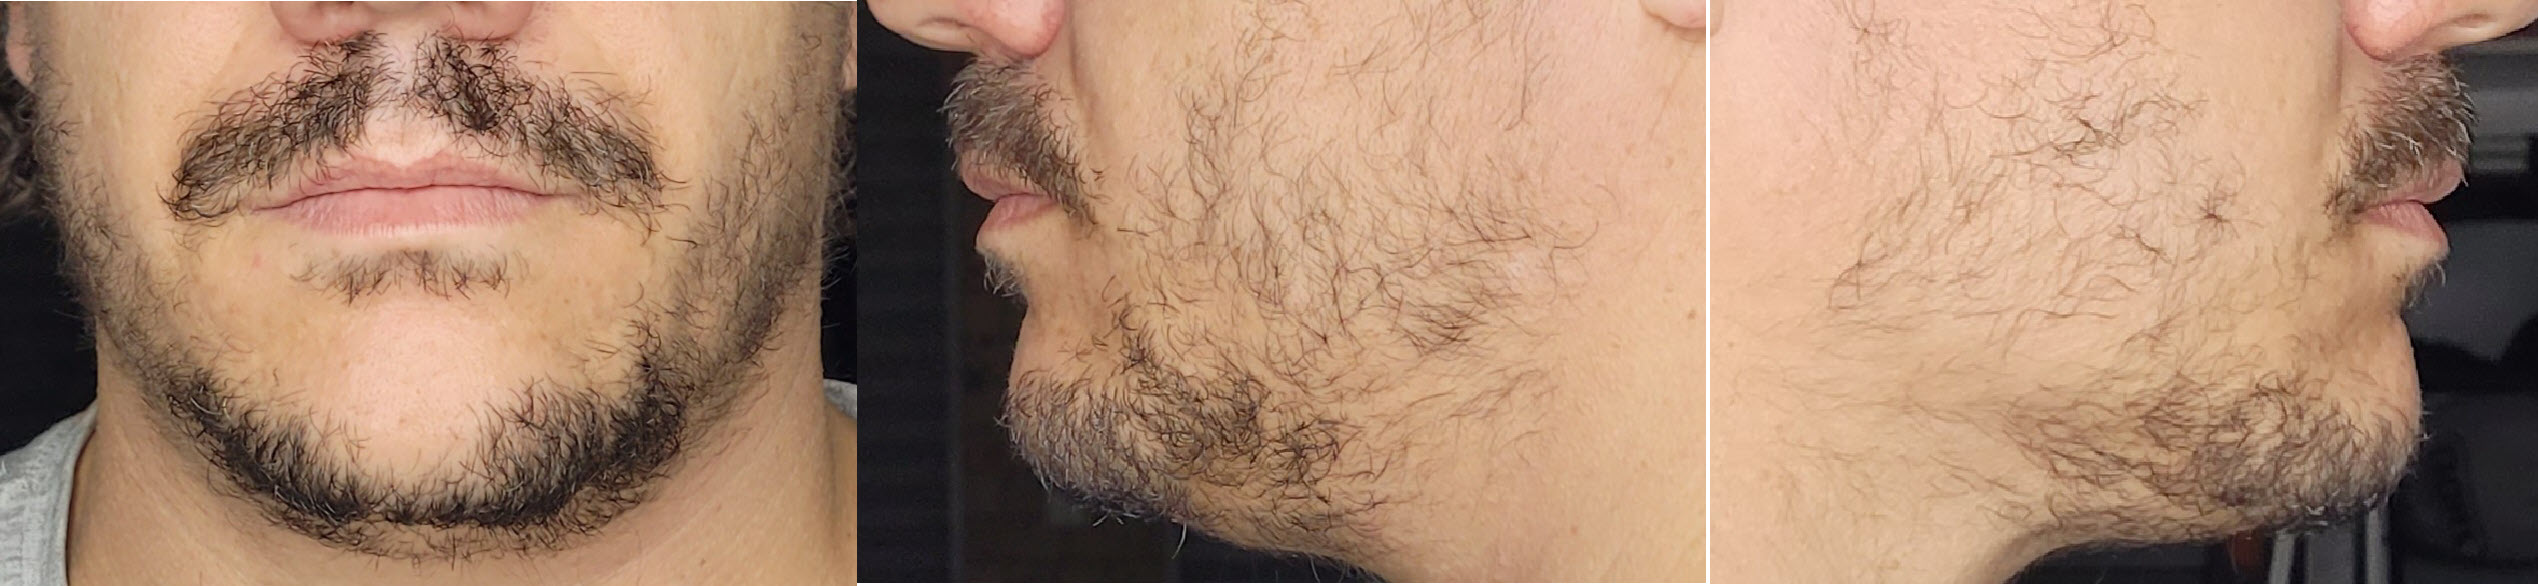 blog/growing-a-beard/2021-06-24.jpg